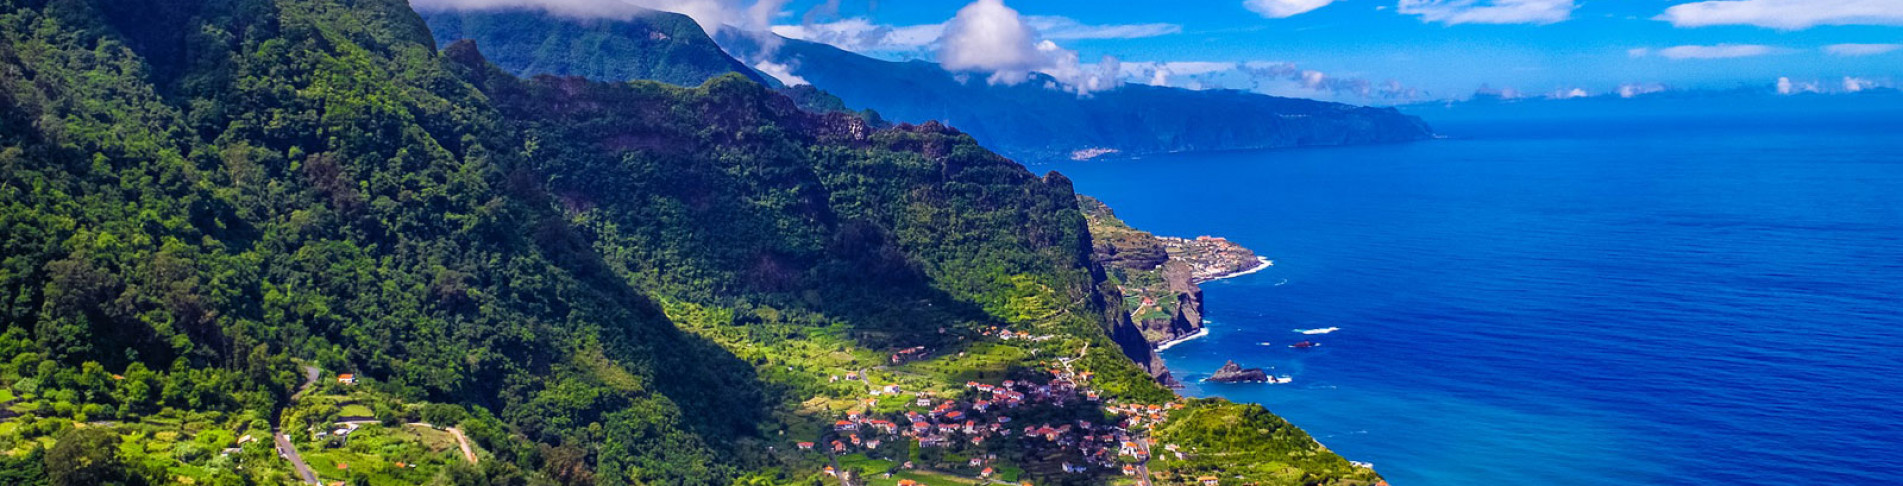 Madeira Urlaub auf der bunten Blumeninsel